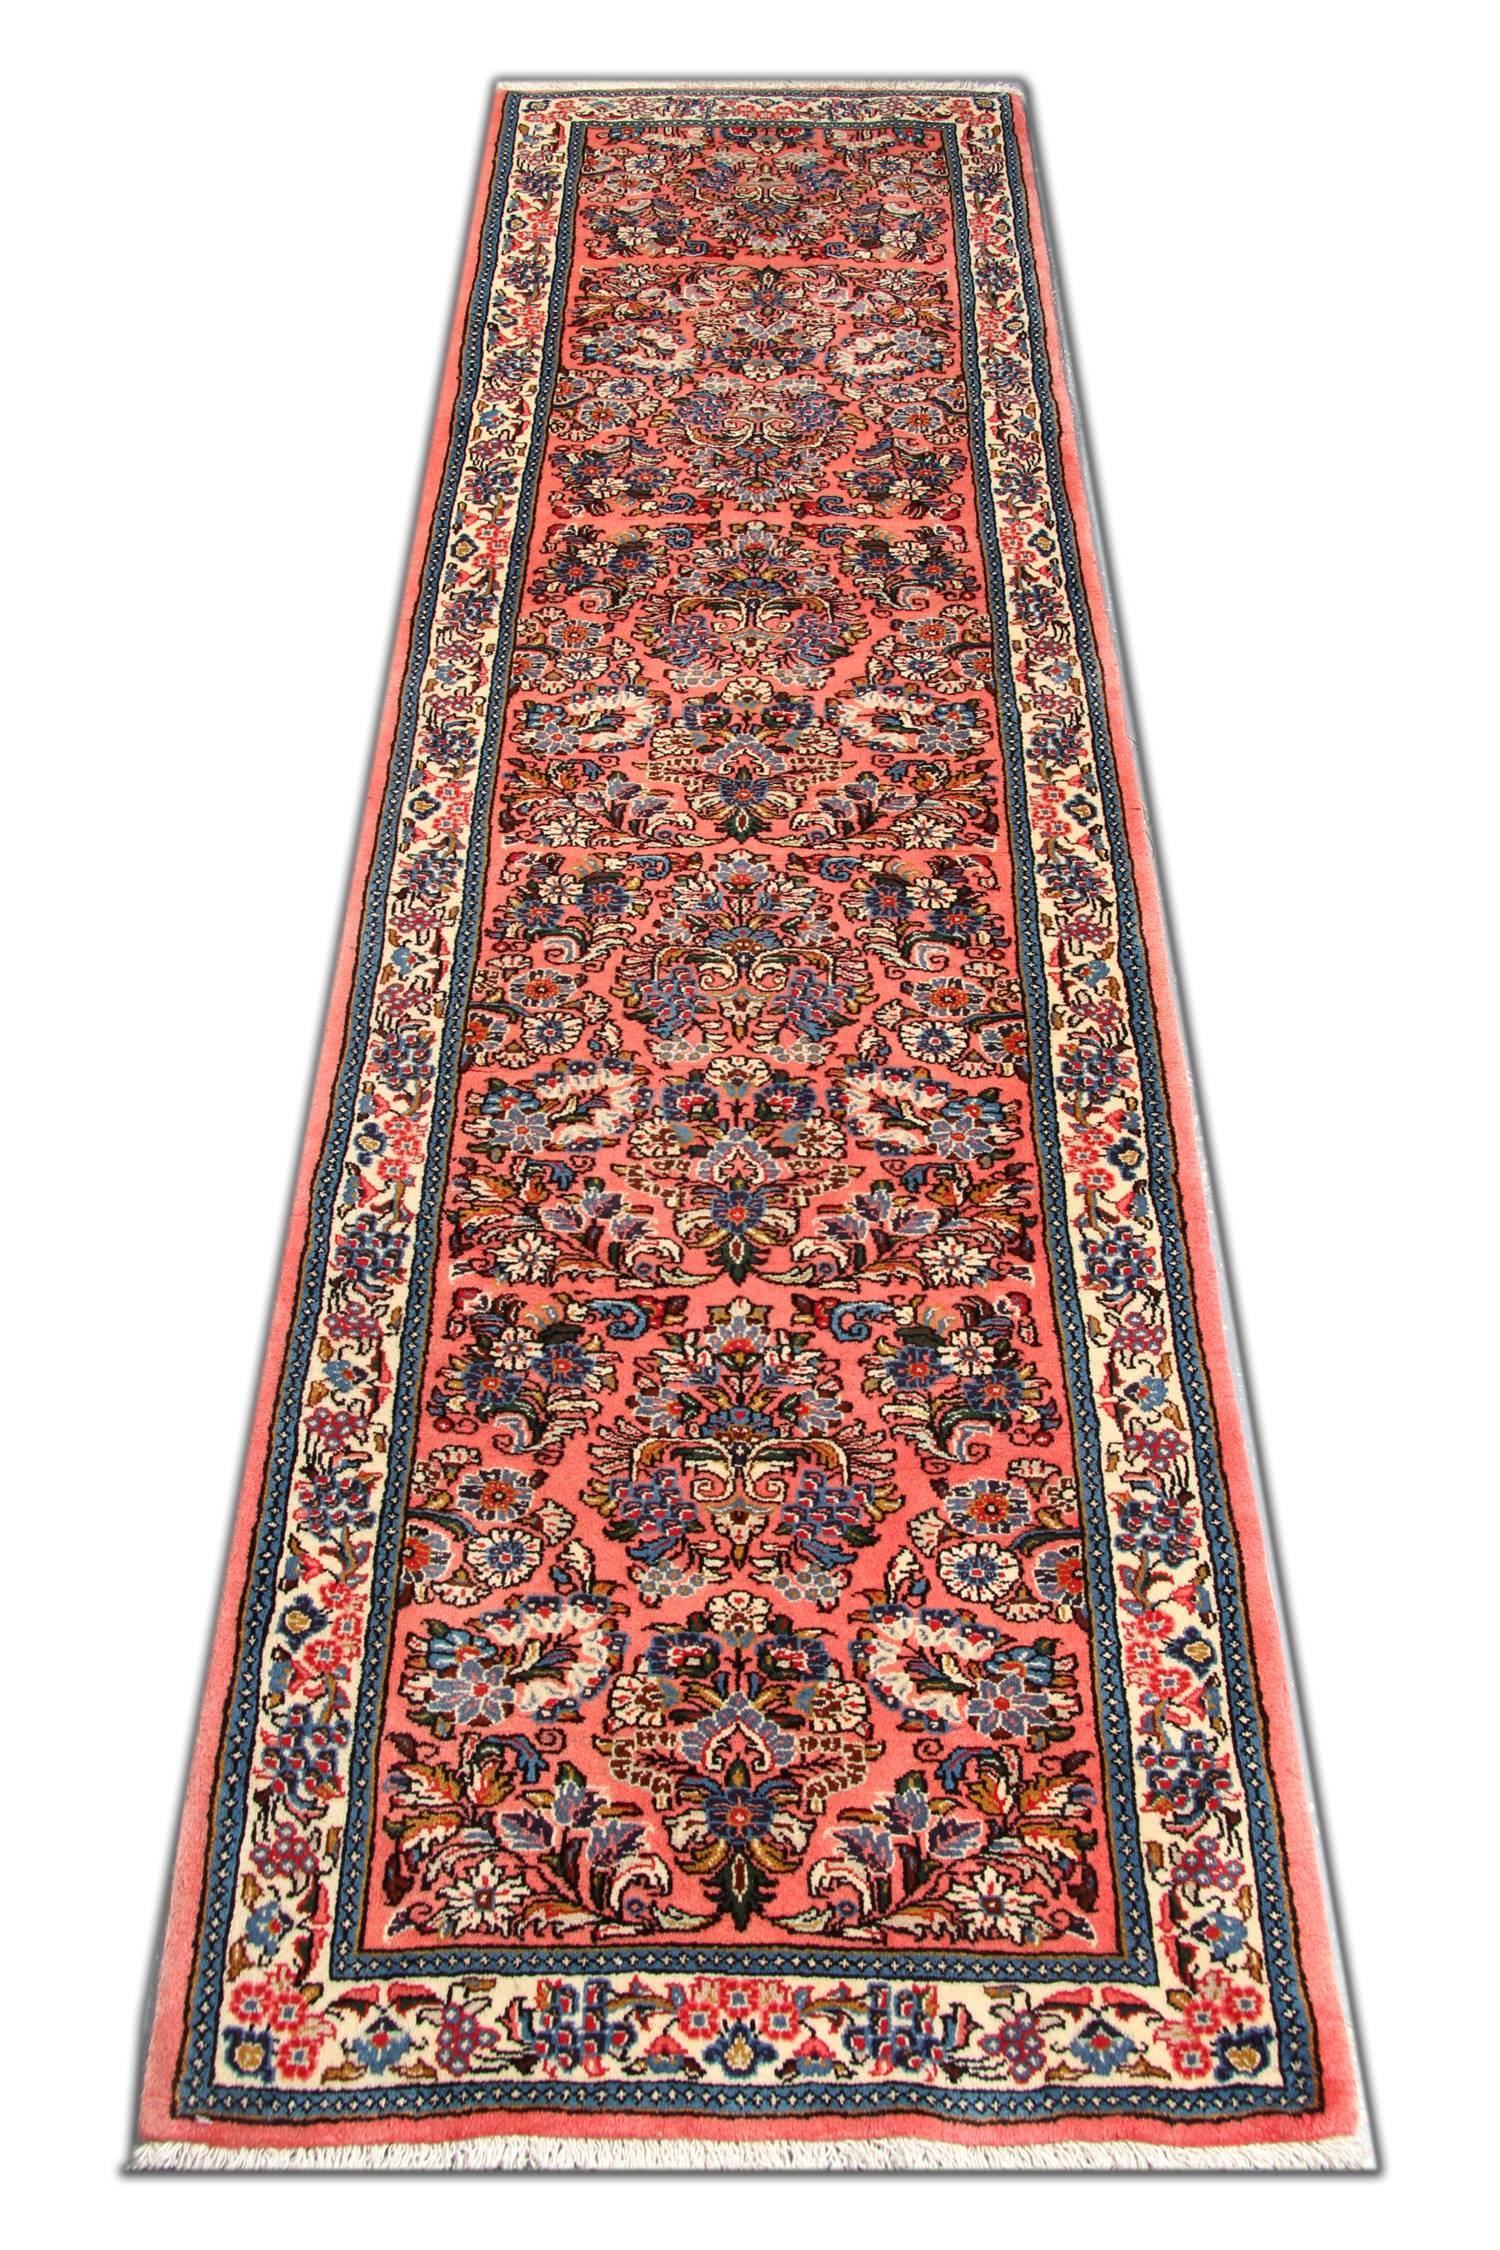 Dieser feine rosa Teppich ist ein traditioneller handgewebter Wollteppich aus den 1950er Jahren. Das zentrale Muster wurde auf einem satten rosa Hintergrund mit blauen, beigen und elfenbeinfarbenen Akzenten kunstvoll gewebt. Dieses wird dann von